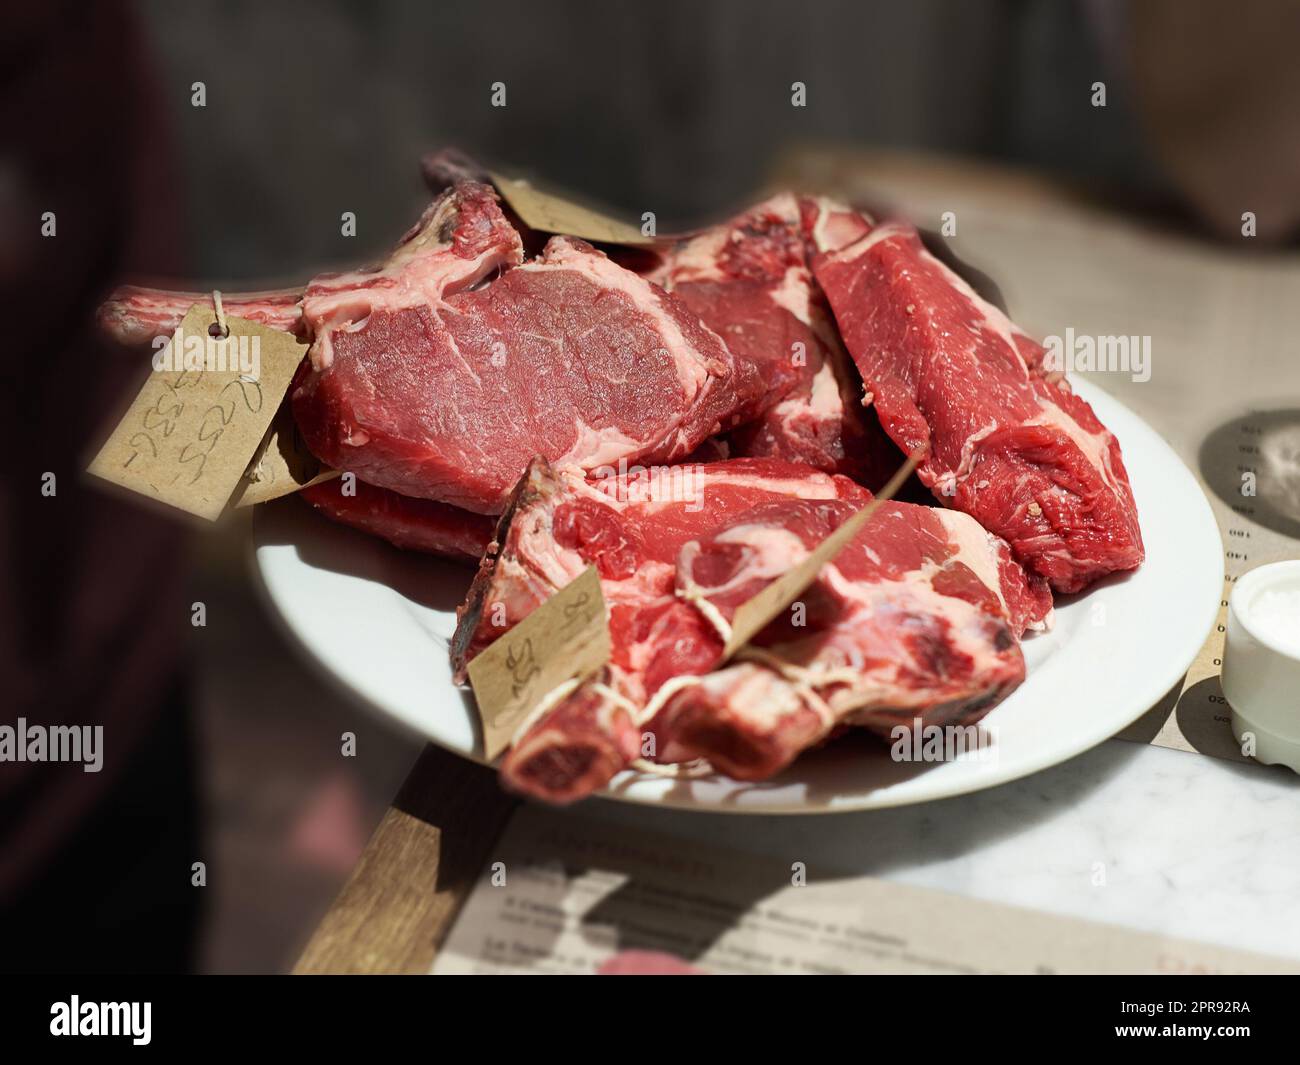 Draufsicht von Fleisch, das für den Verkauf bei einem Metzger vorbereitet wird. Köstliches Rindersteak, das verarbeitet und sortiert wird, um Mittag- oder Abendessen in einer Küche zu Hause zuzubereiten. Lebensmittel mit hohem Proteingehalt, frisch von einem Bauernhof Stockfoto